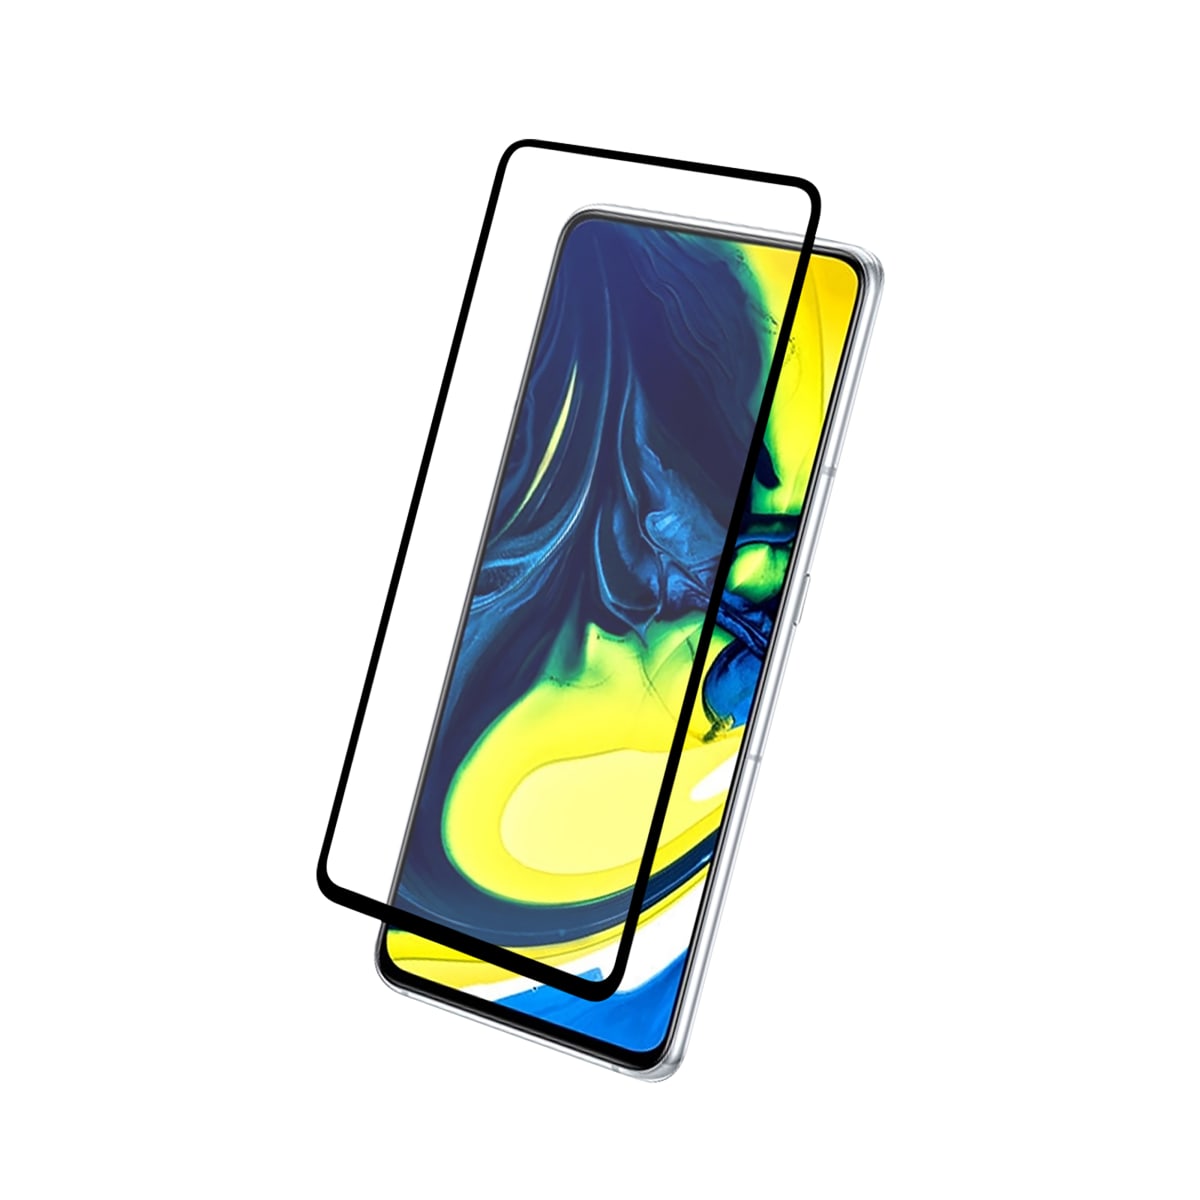 Proteção total em vidro temperado para Samsung Galaxy A90 e A80